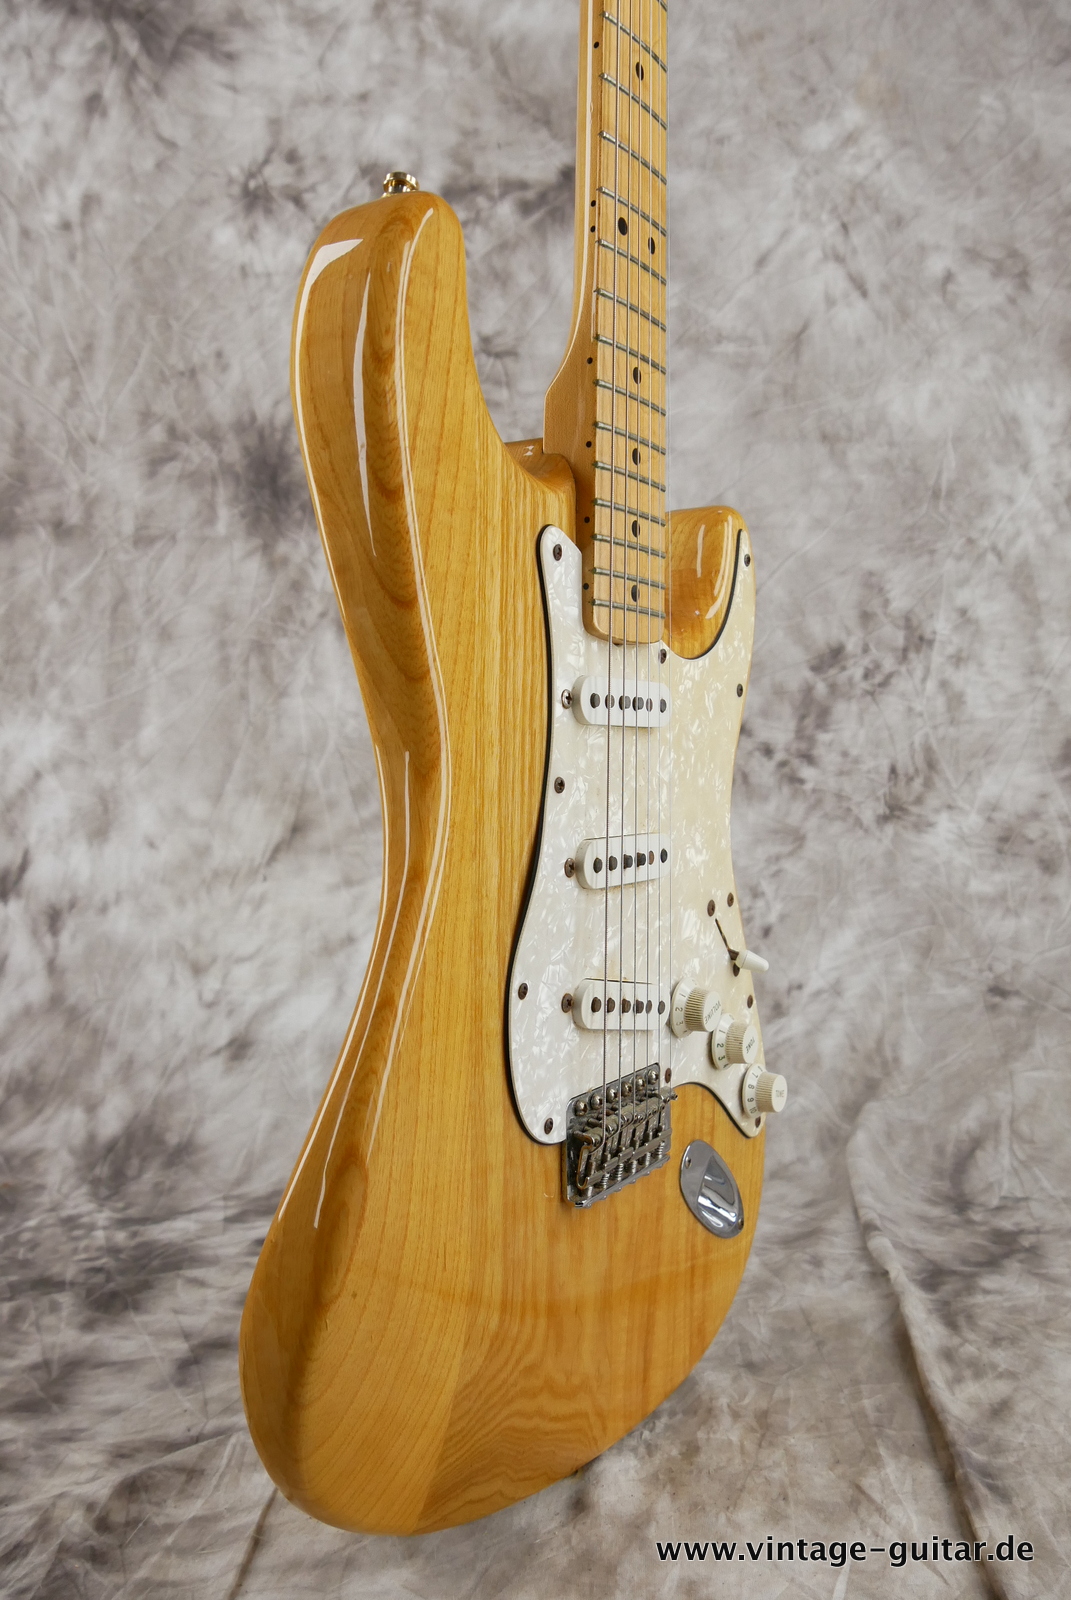 img/vintage/5322/Fender_Stratocaster_70s_reissue_maple_neck_1999_Mexico-005.JPG